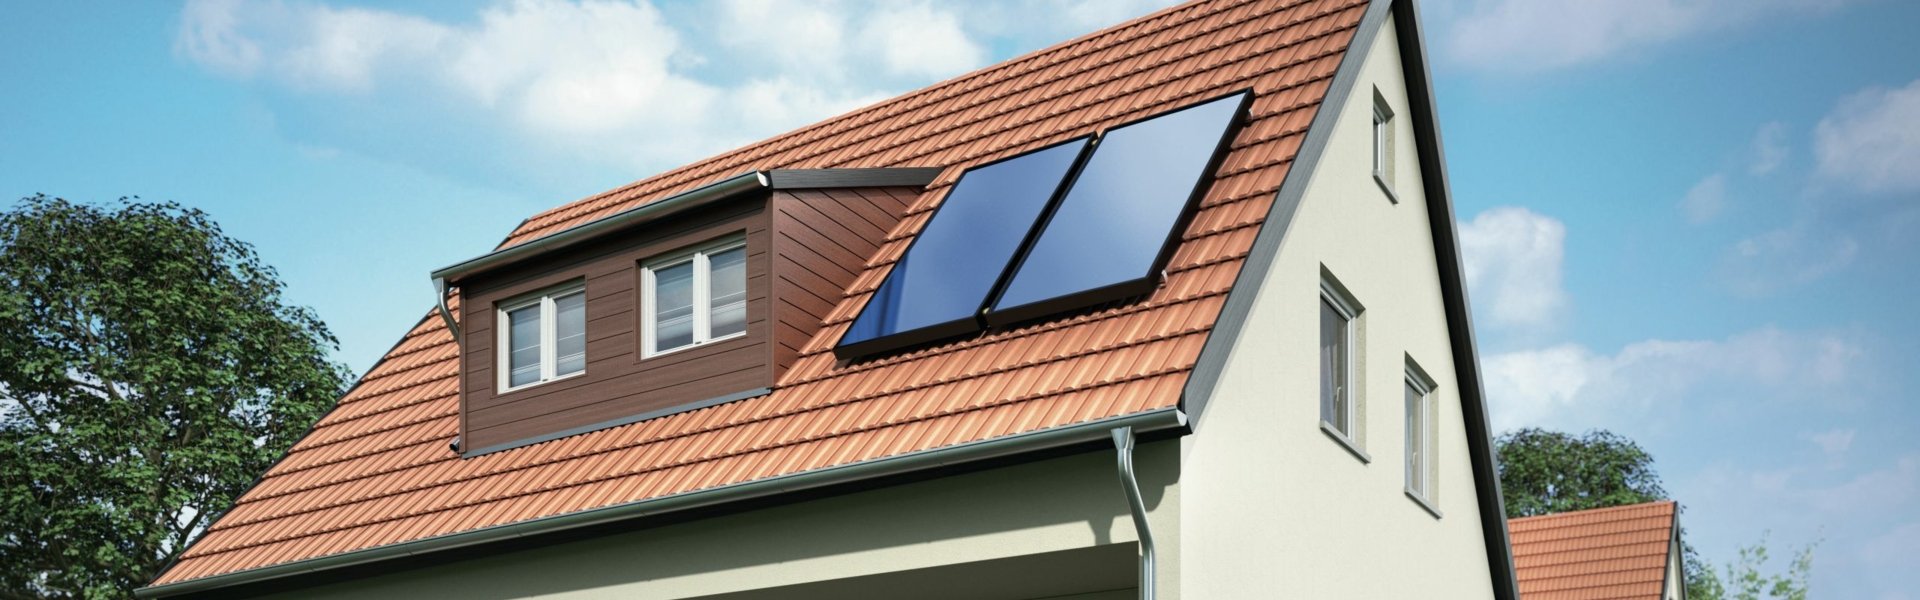 Darstellung der Solarthermieanlage von Viessmann. Zu sehen ist ein Einfamilienhaus mit einer Solarthermieanlage auf dem Dach.